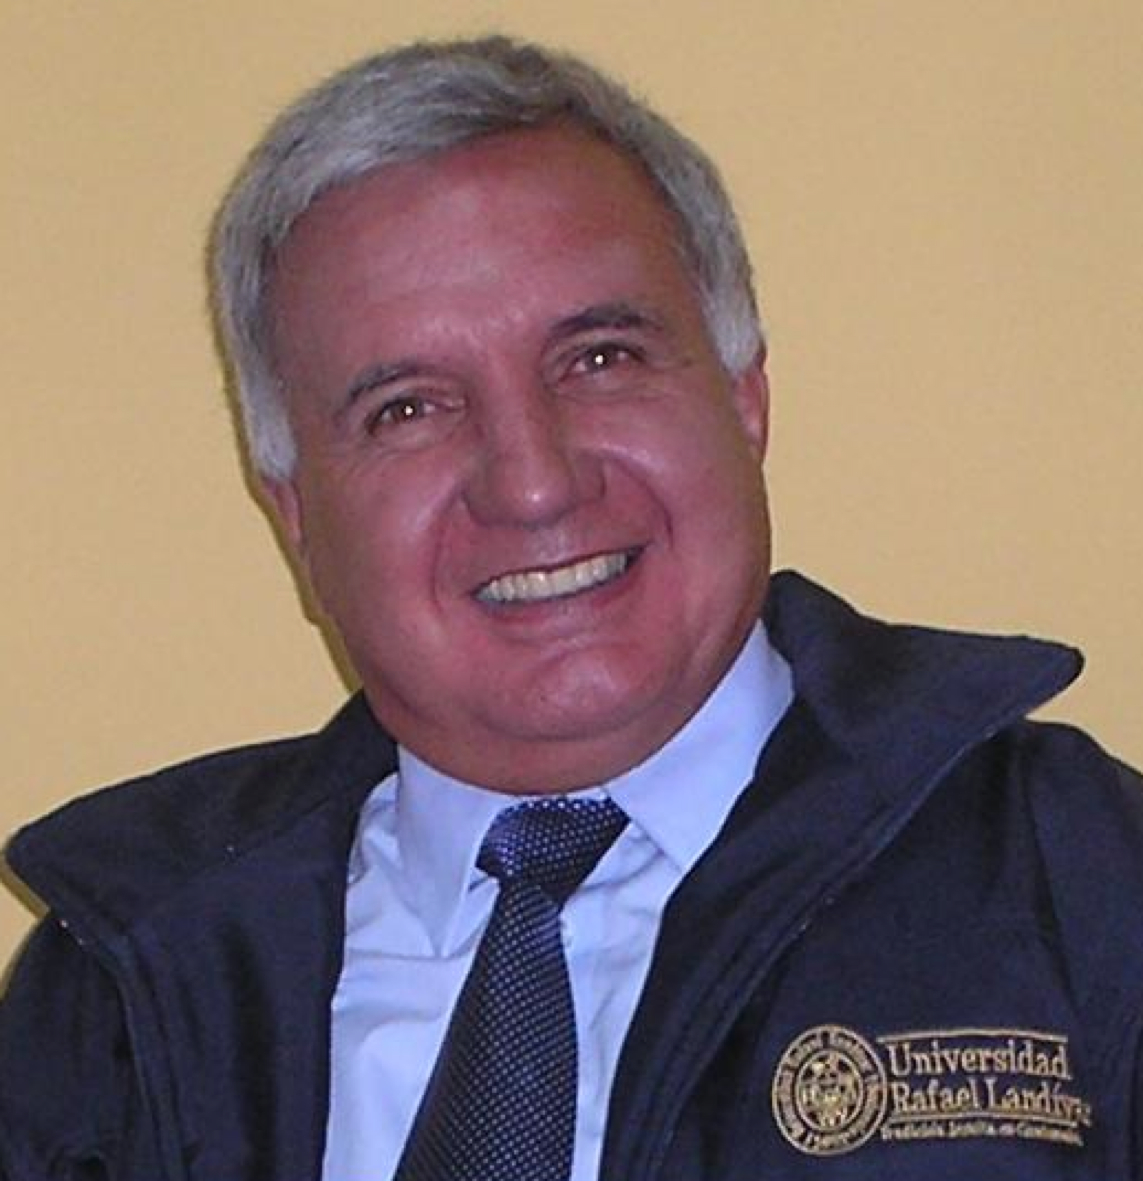 Arq. Manrique Sáenz C.